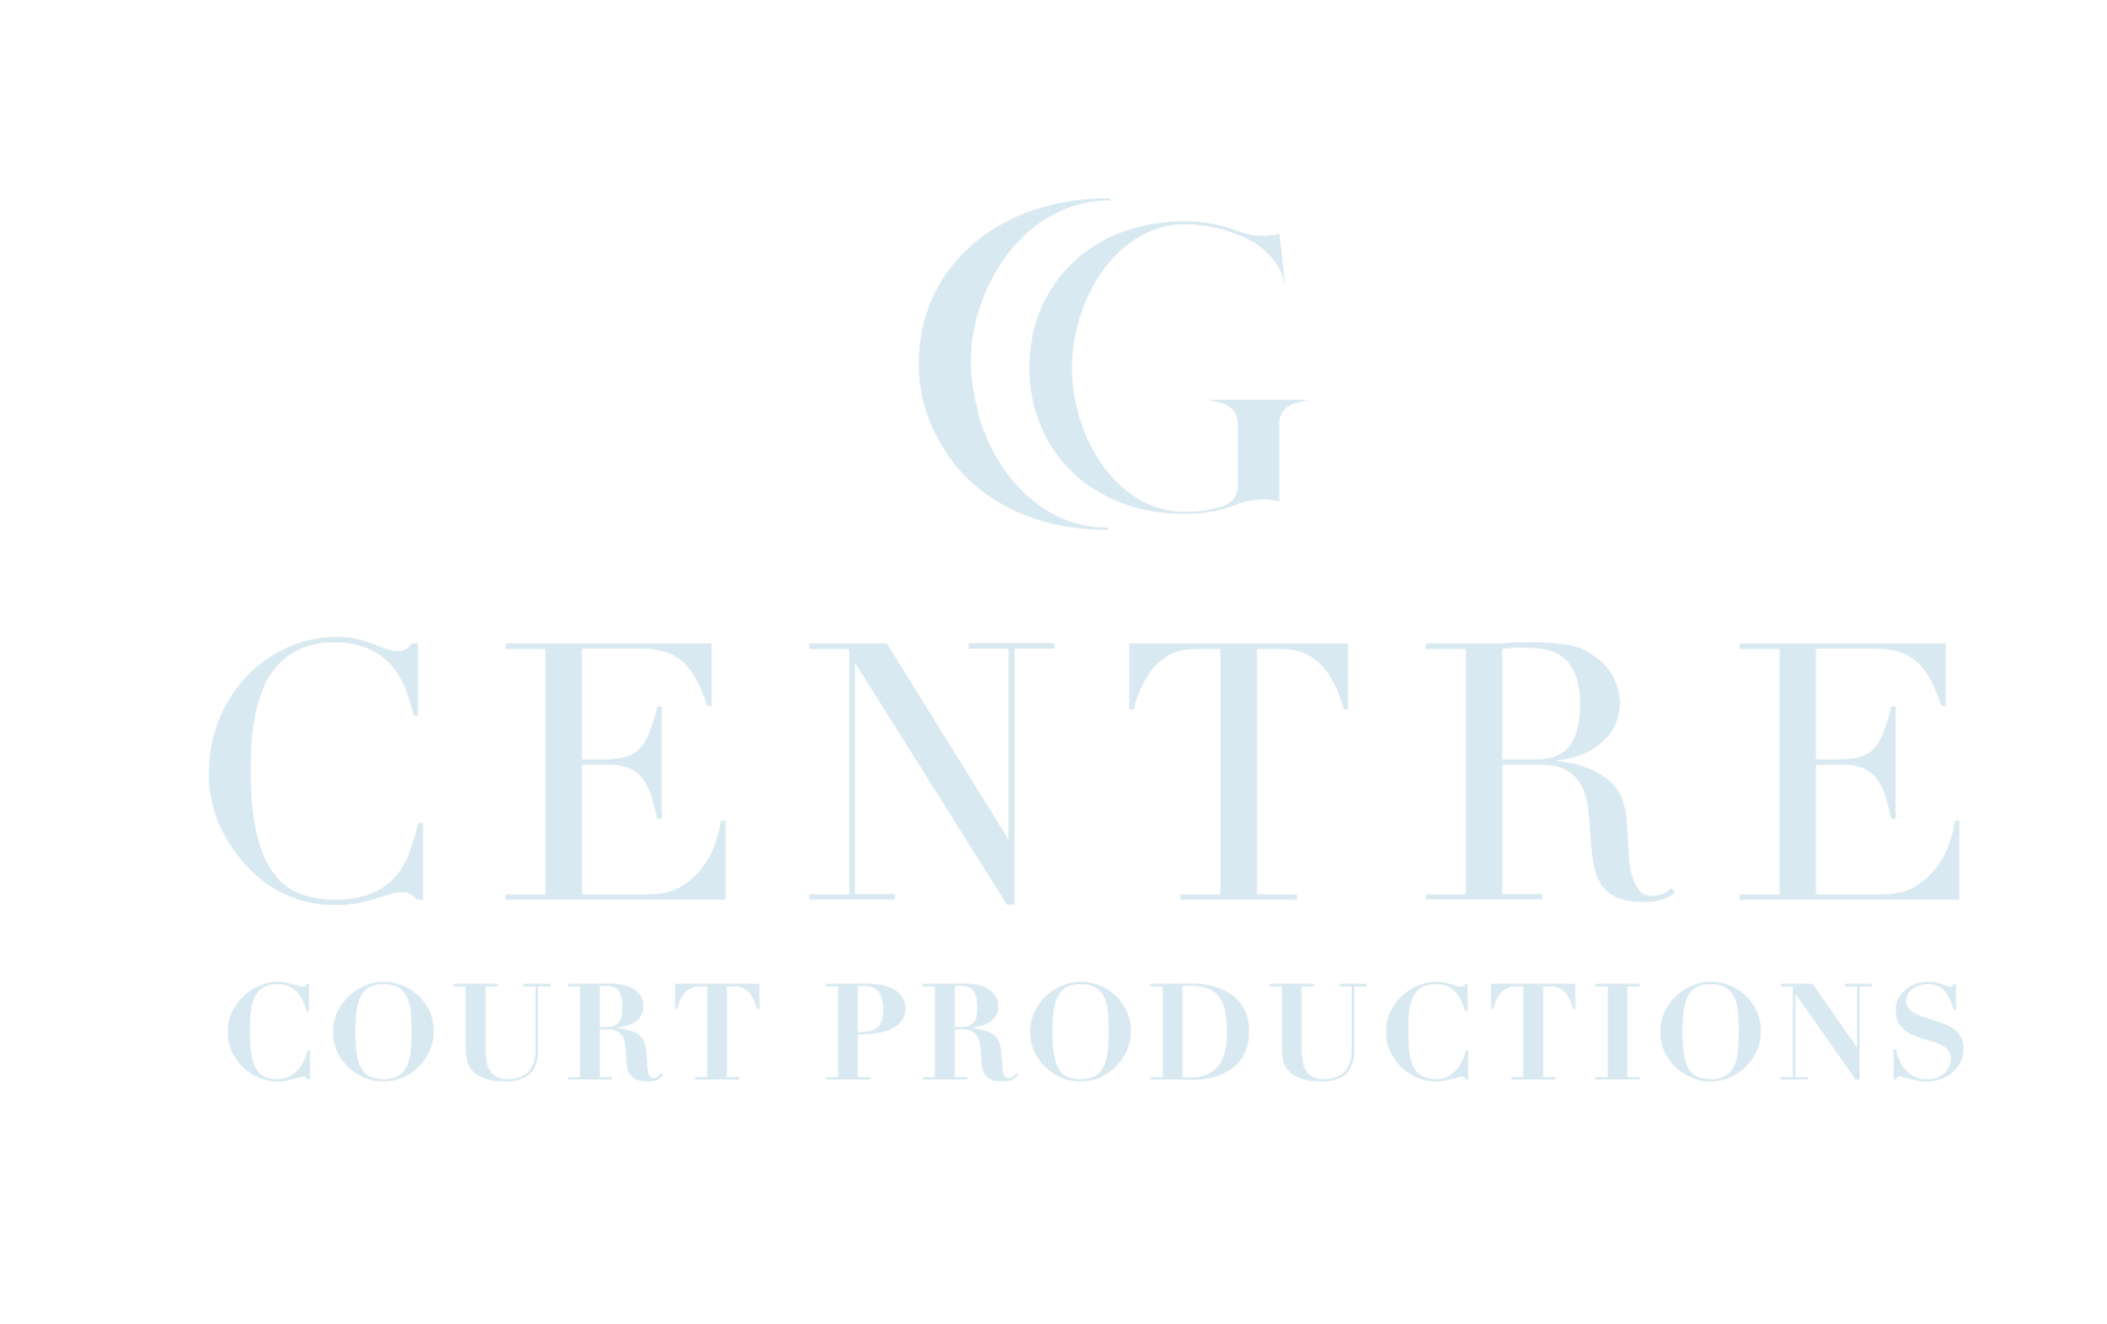 Centre Court Productions